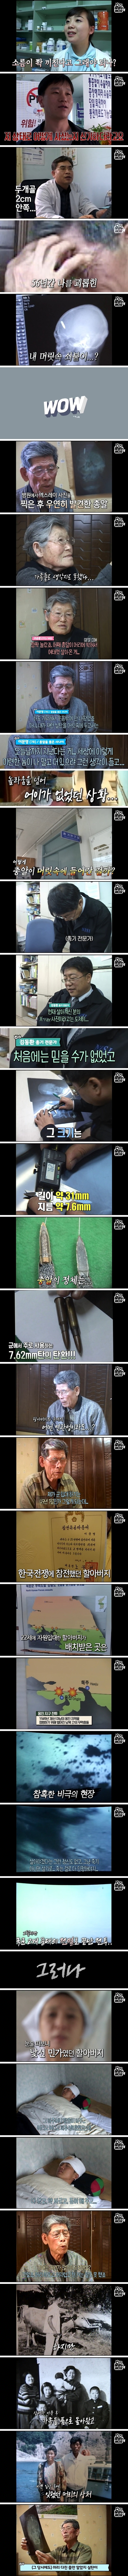 56년 뒤 전두엽에서 발견된 북한군의 총알 (1).jpg